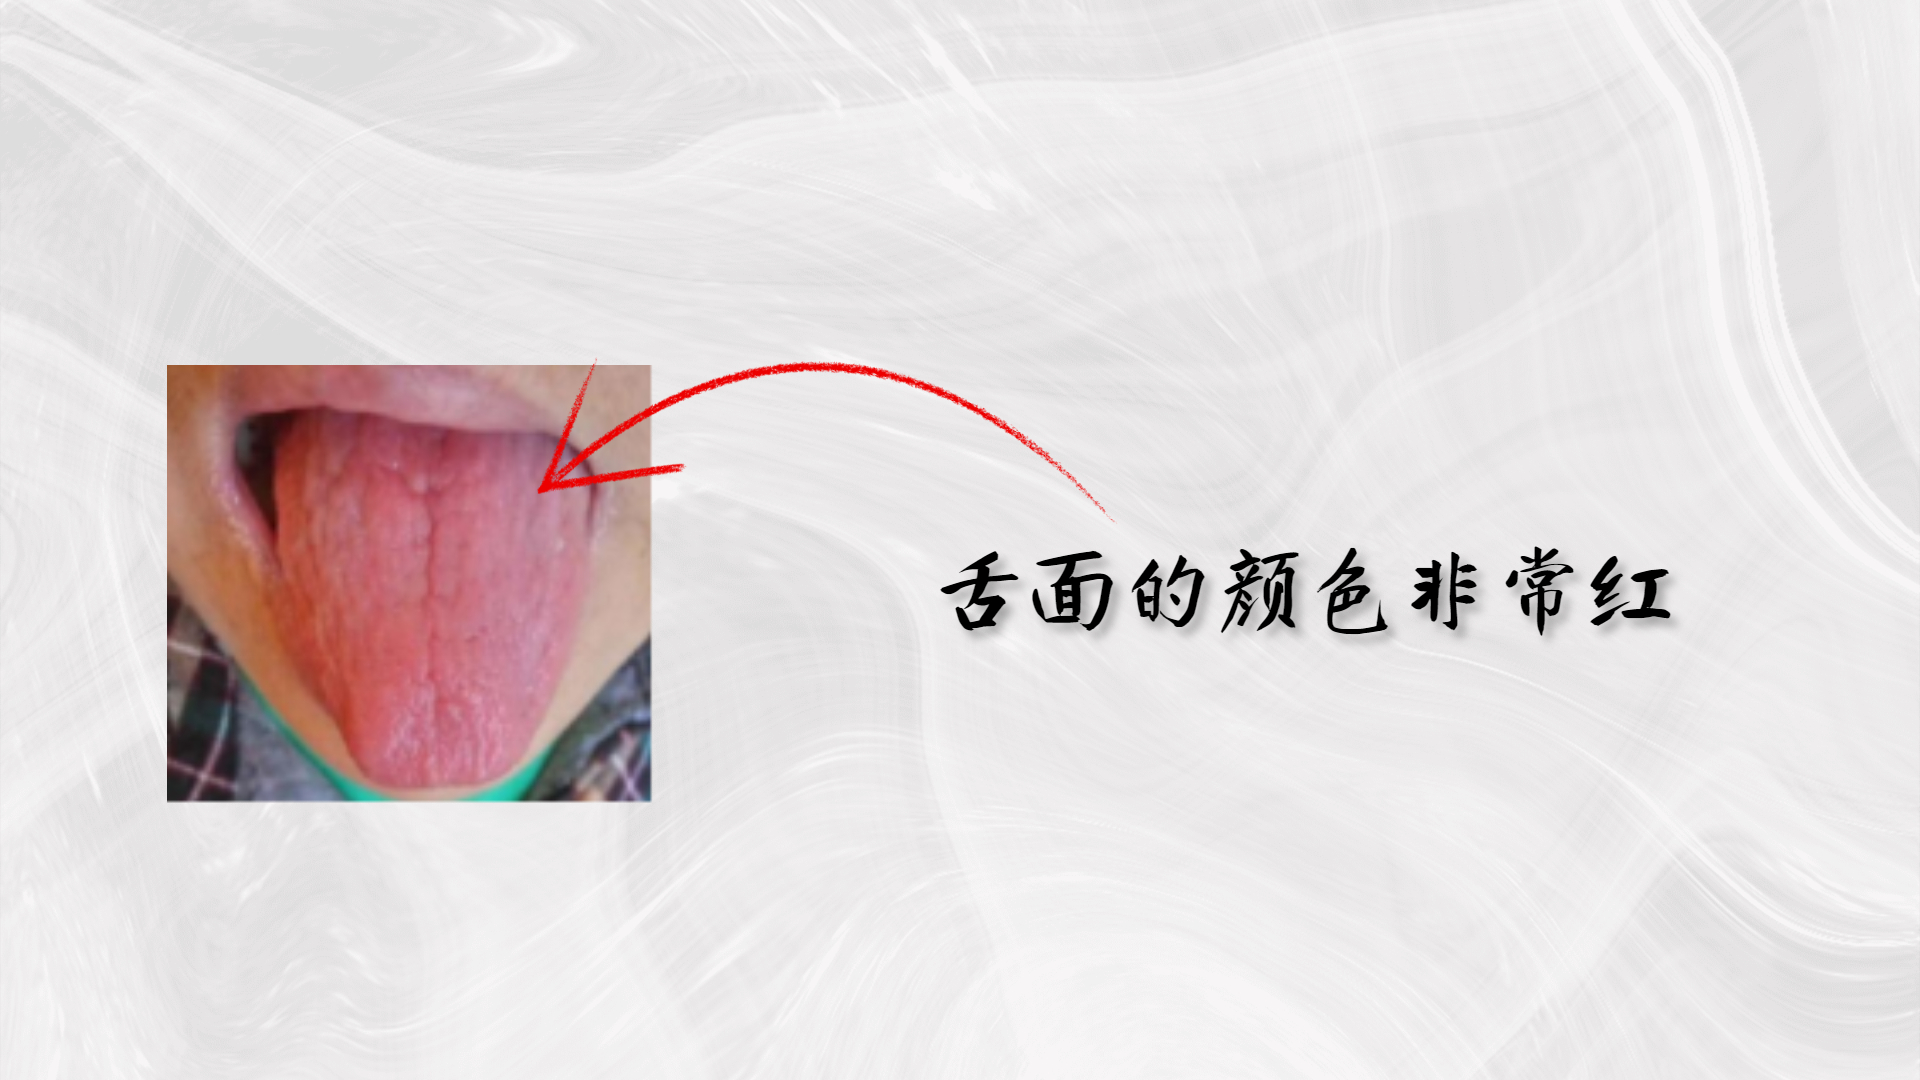 口角炎症状图片_其他皮肤病_北京京城皮肤医院(北京医保定点机构)